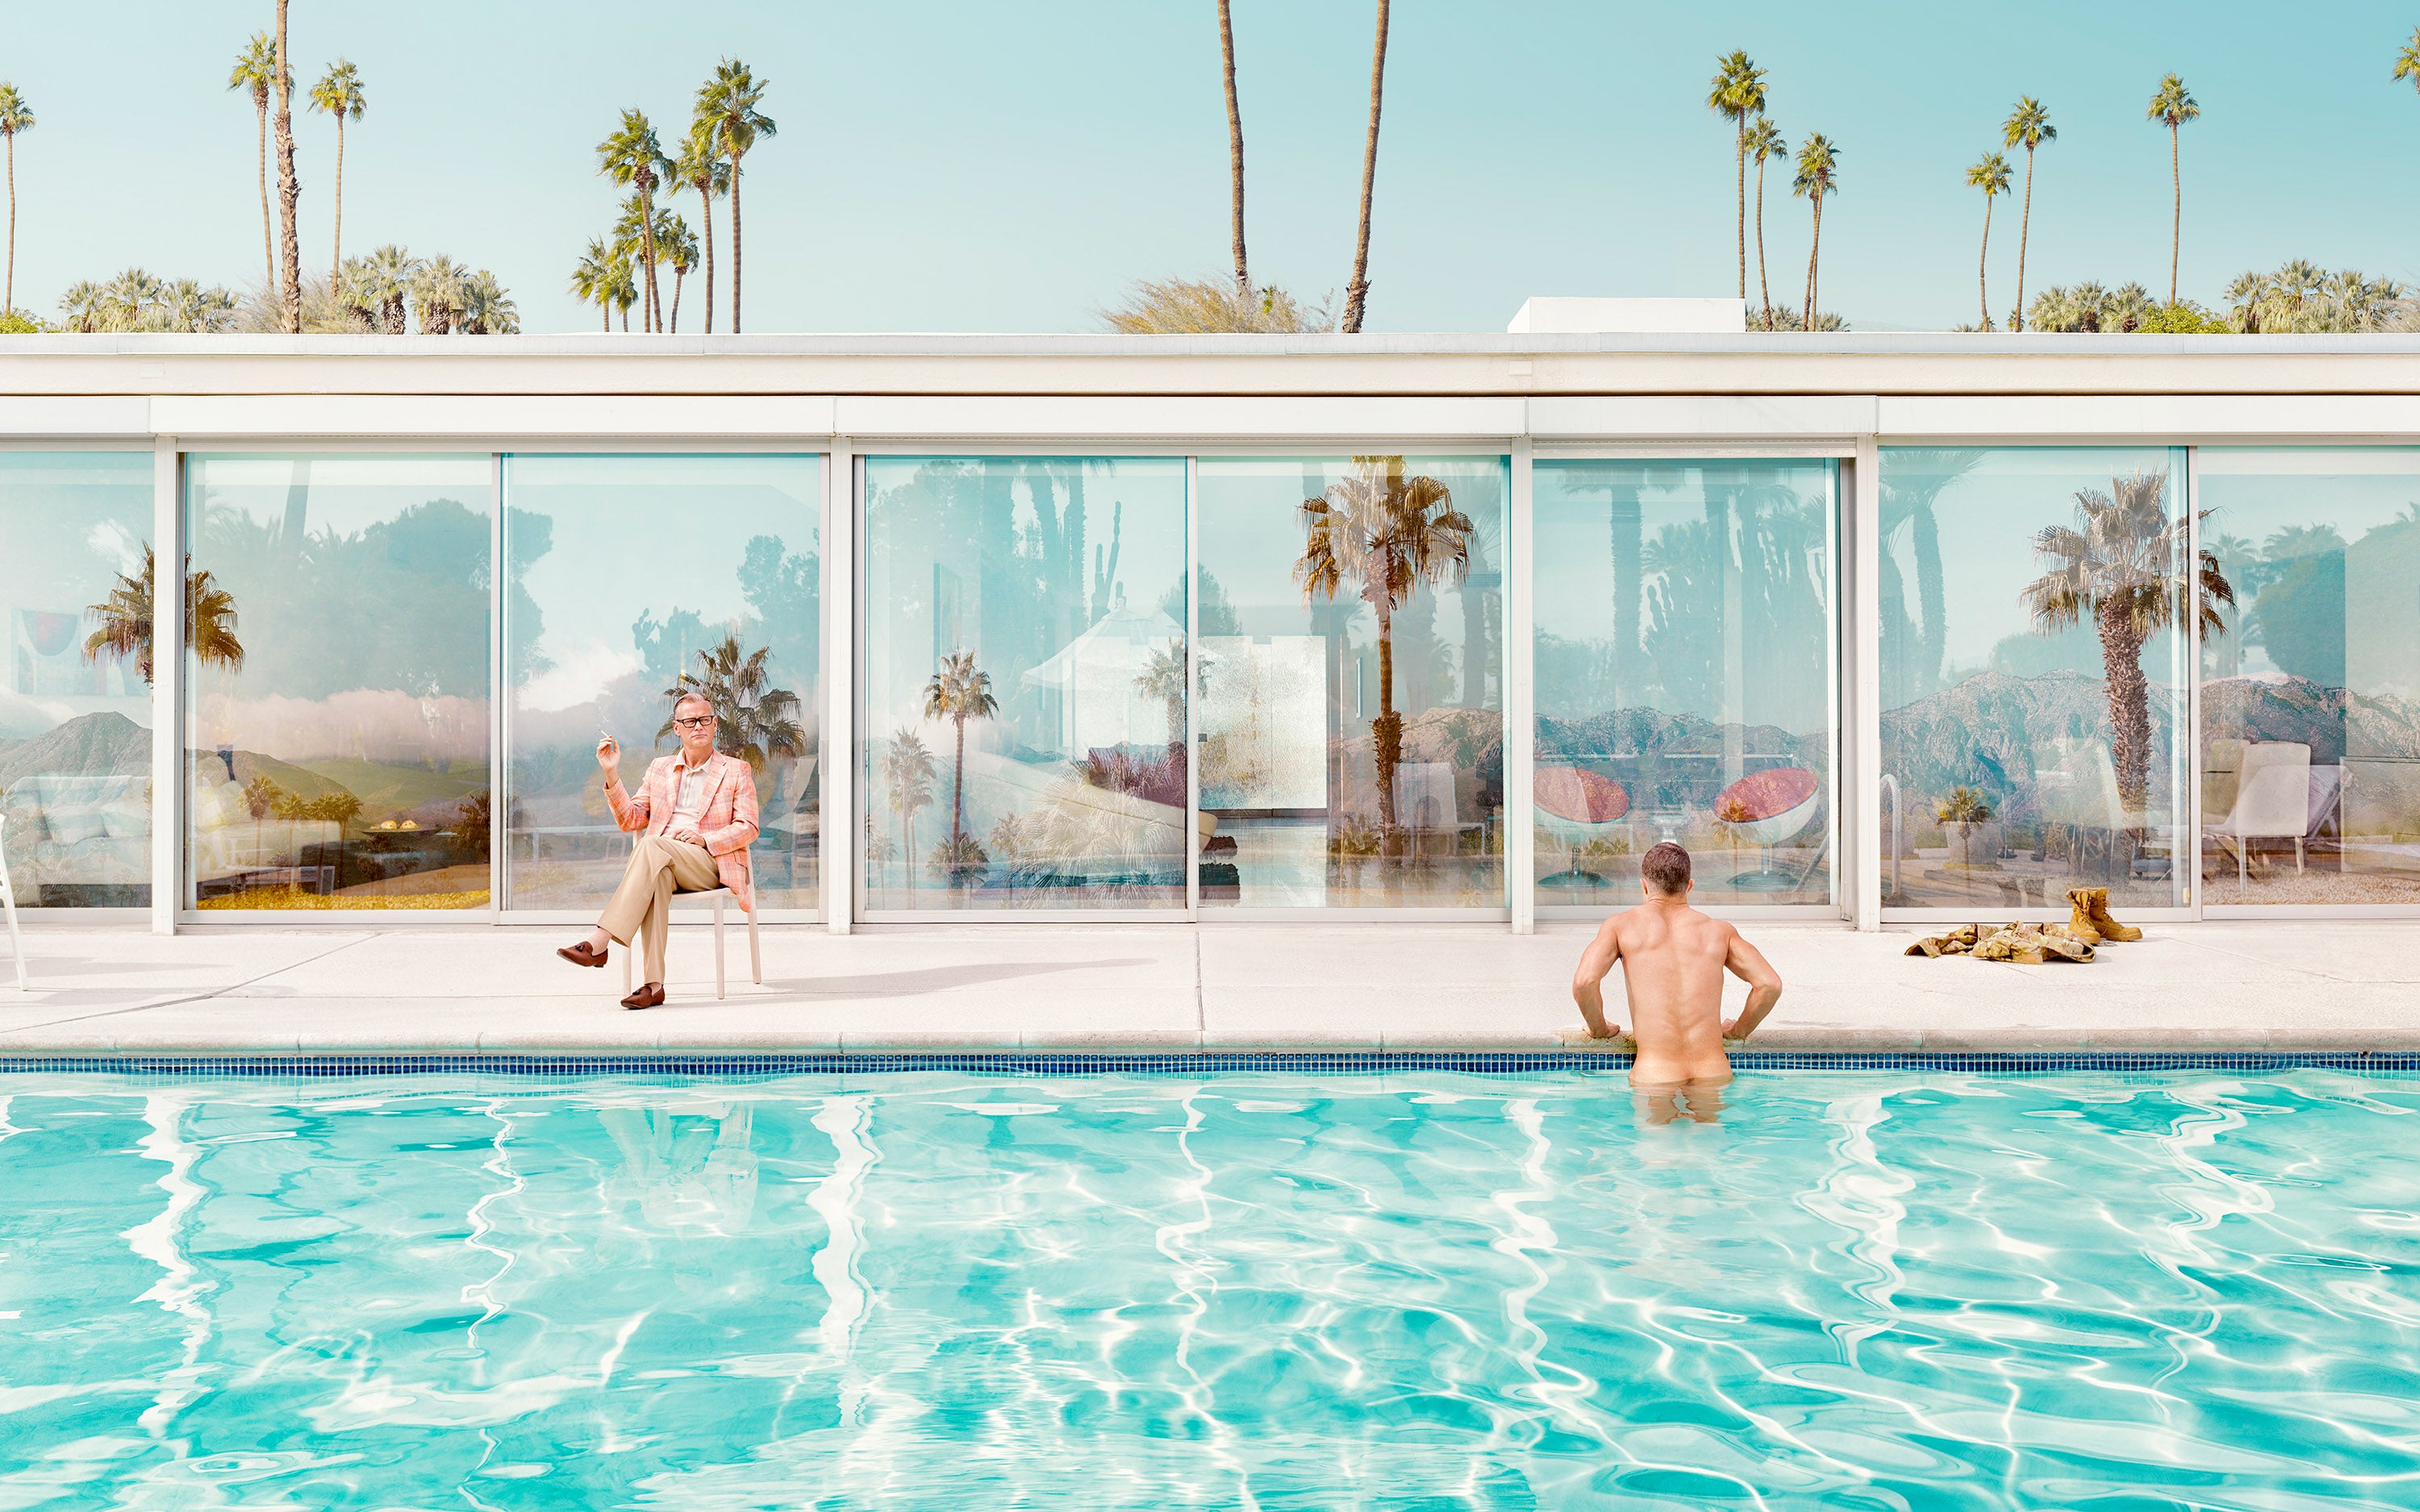 Palm Springs # 2, 2015